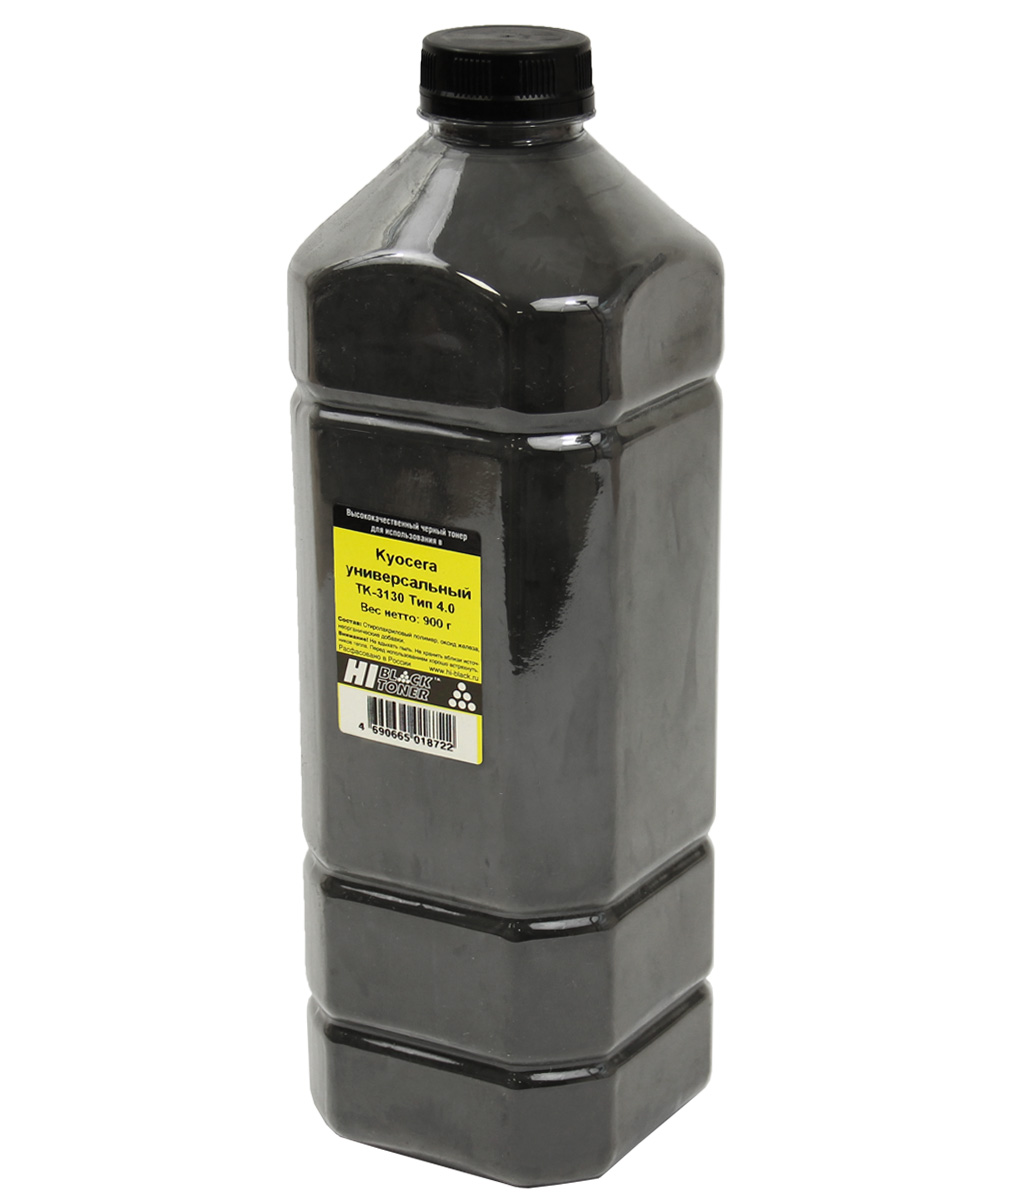 Тонер универсальный Hi-Black (TK-3130) для Kyocera ECOSYS M3550/ FS-4200DN, Тип 4.0, чёрный (900 гр.)